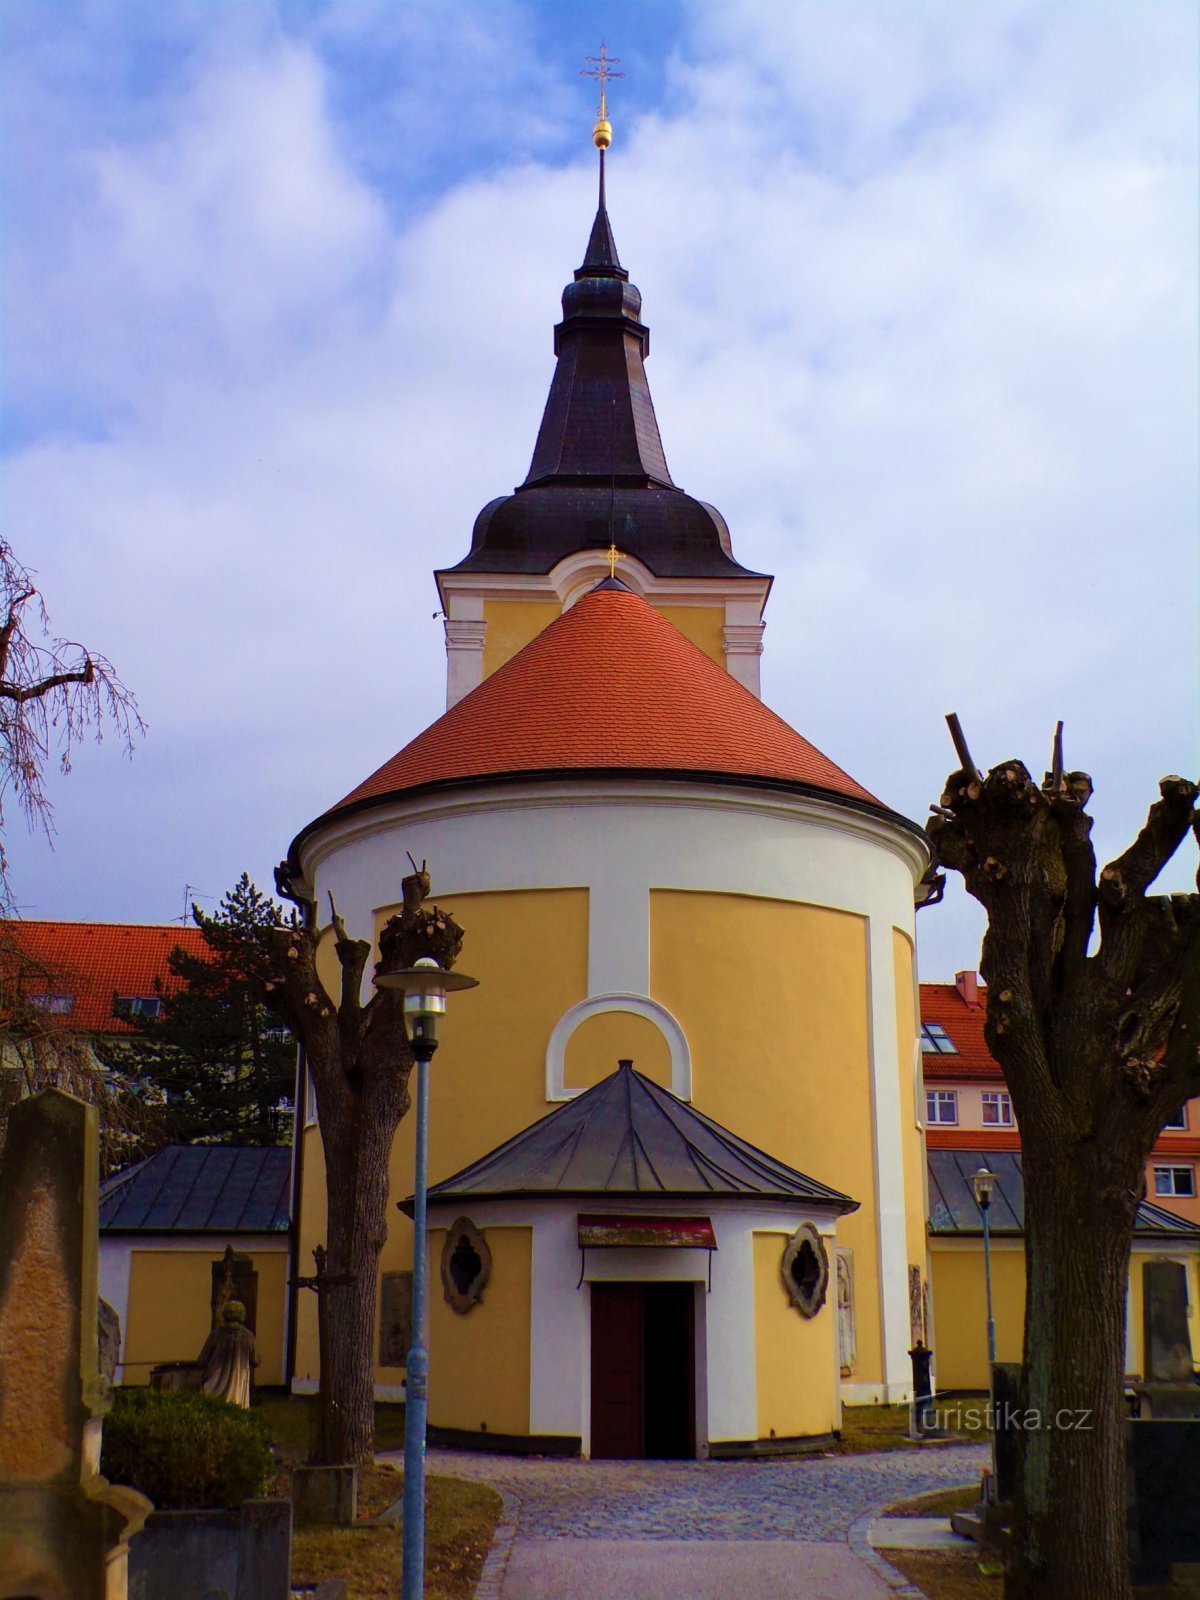 Kyrkogård Church of Our Lady of Sorrows (Jičín, 4.3.2022/XNUMX/XNUMX)